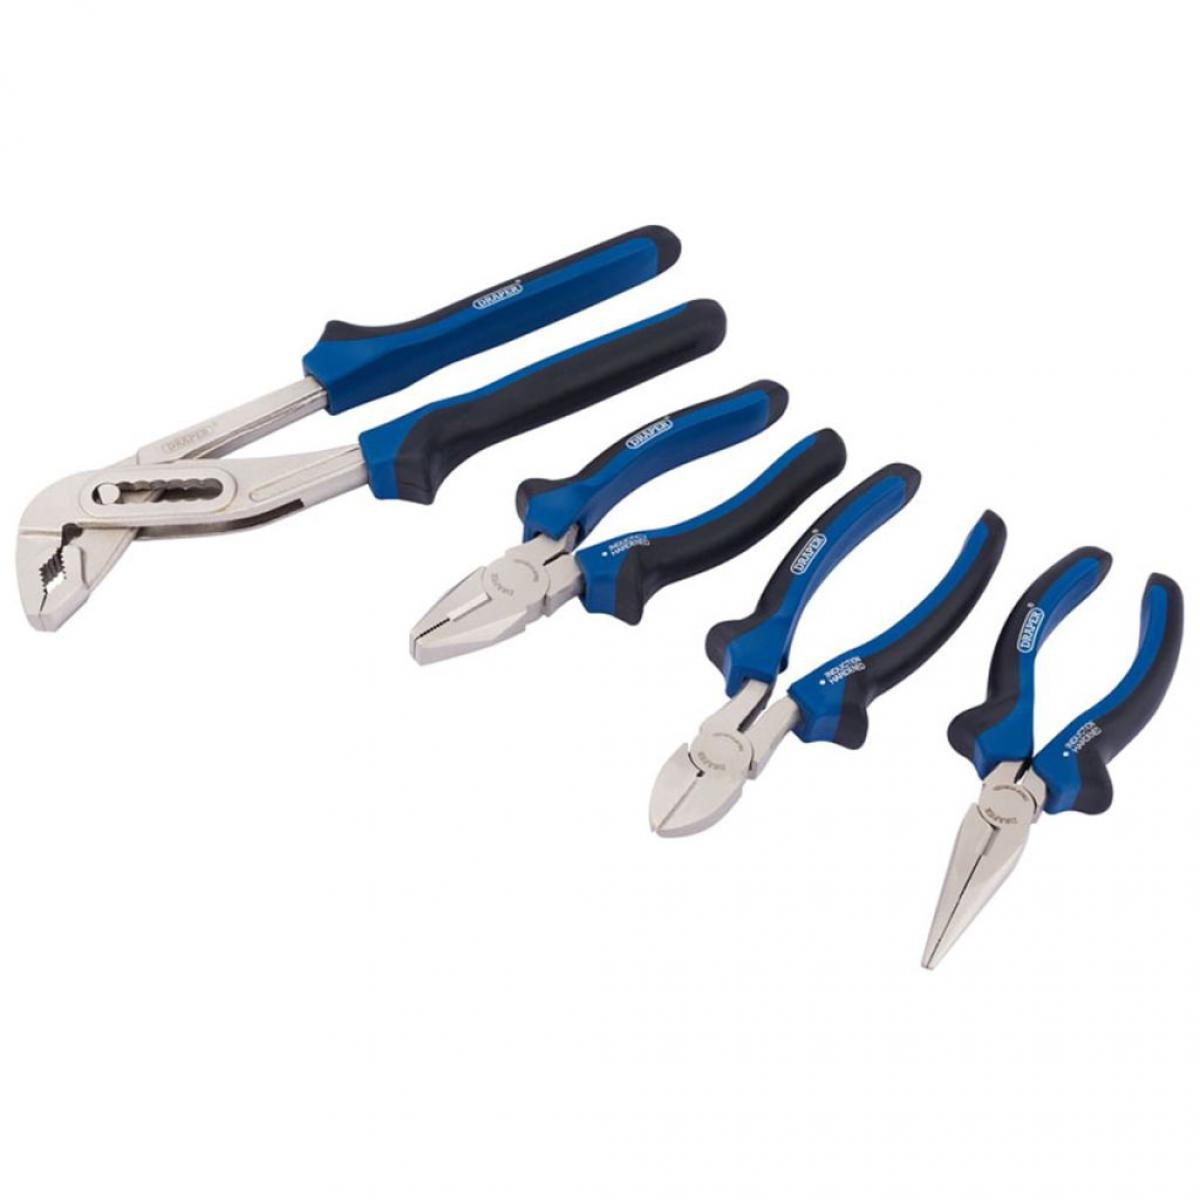 Draper Tools - Draper Tools Jeu de pinces 4 pièces 81147 - Accessoires barbecue